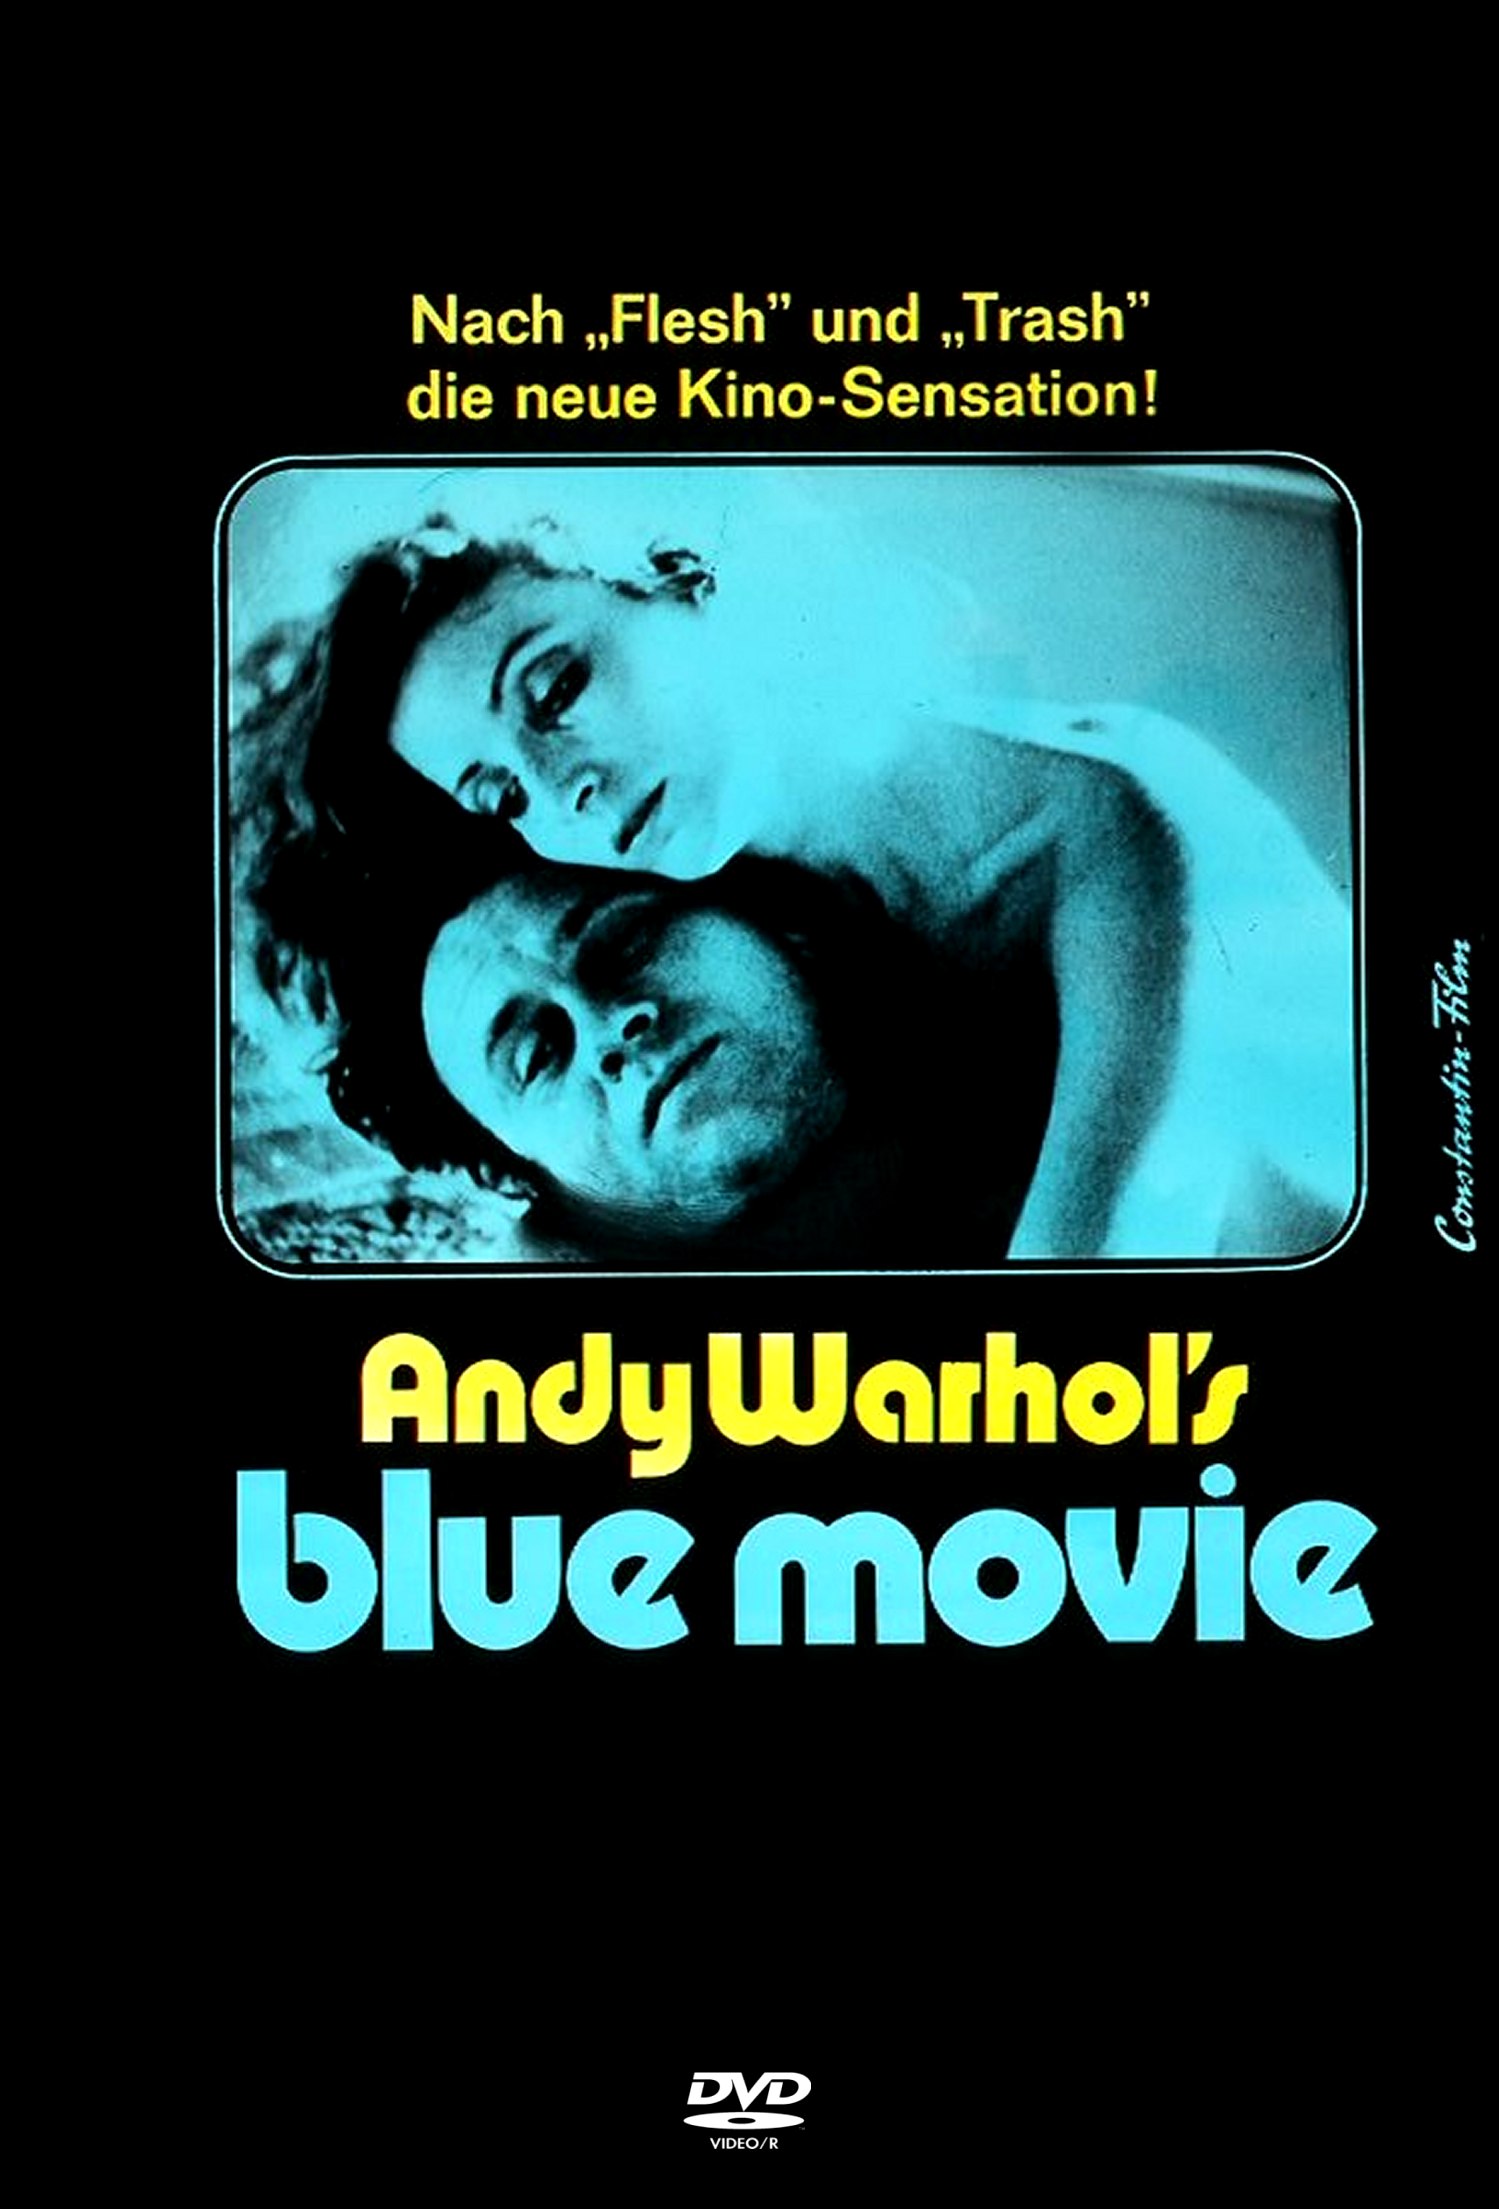 Blue Movie/Fuck, il Sesso al Cinema Secondo Andy Warhol - Immagine